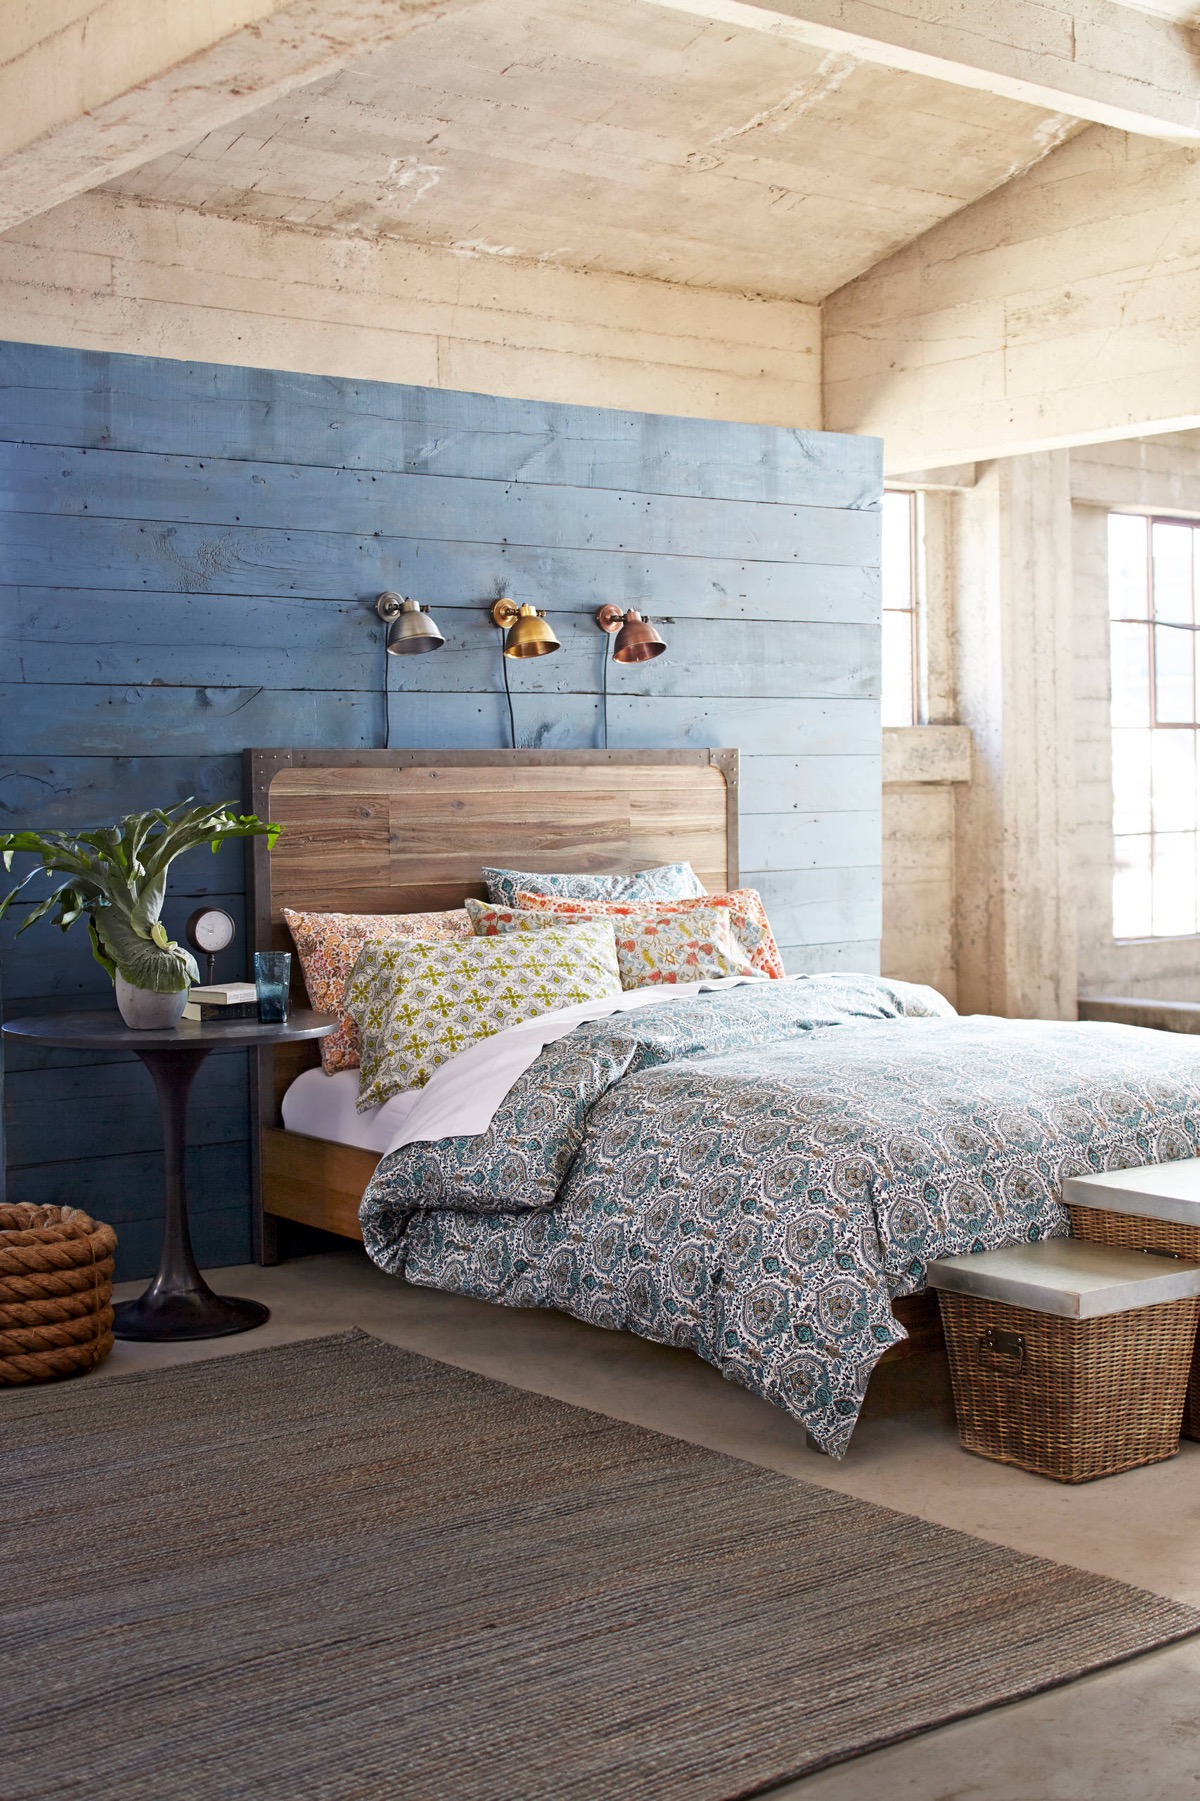 Mẫu thiết kế phòng ngủ xanh biển đậm đẹp